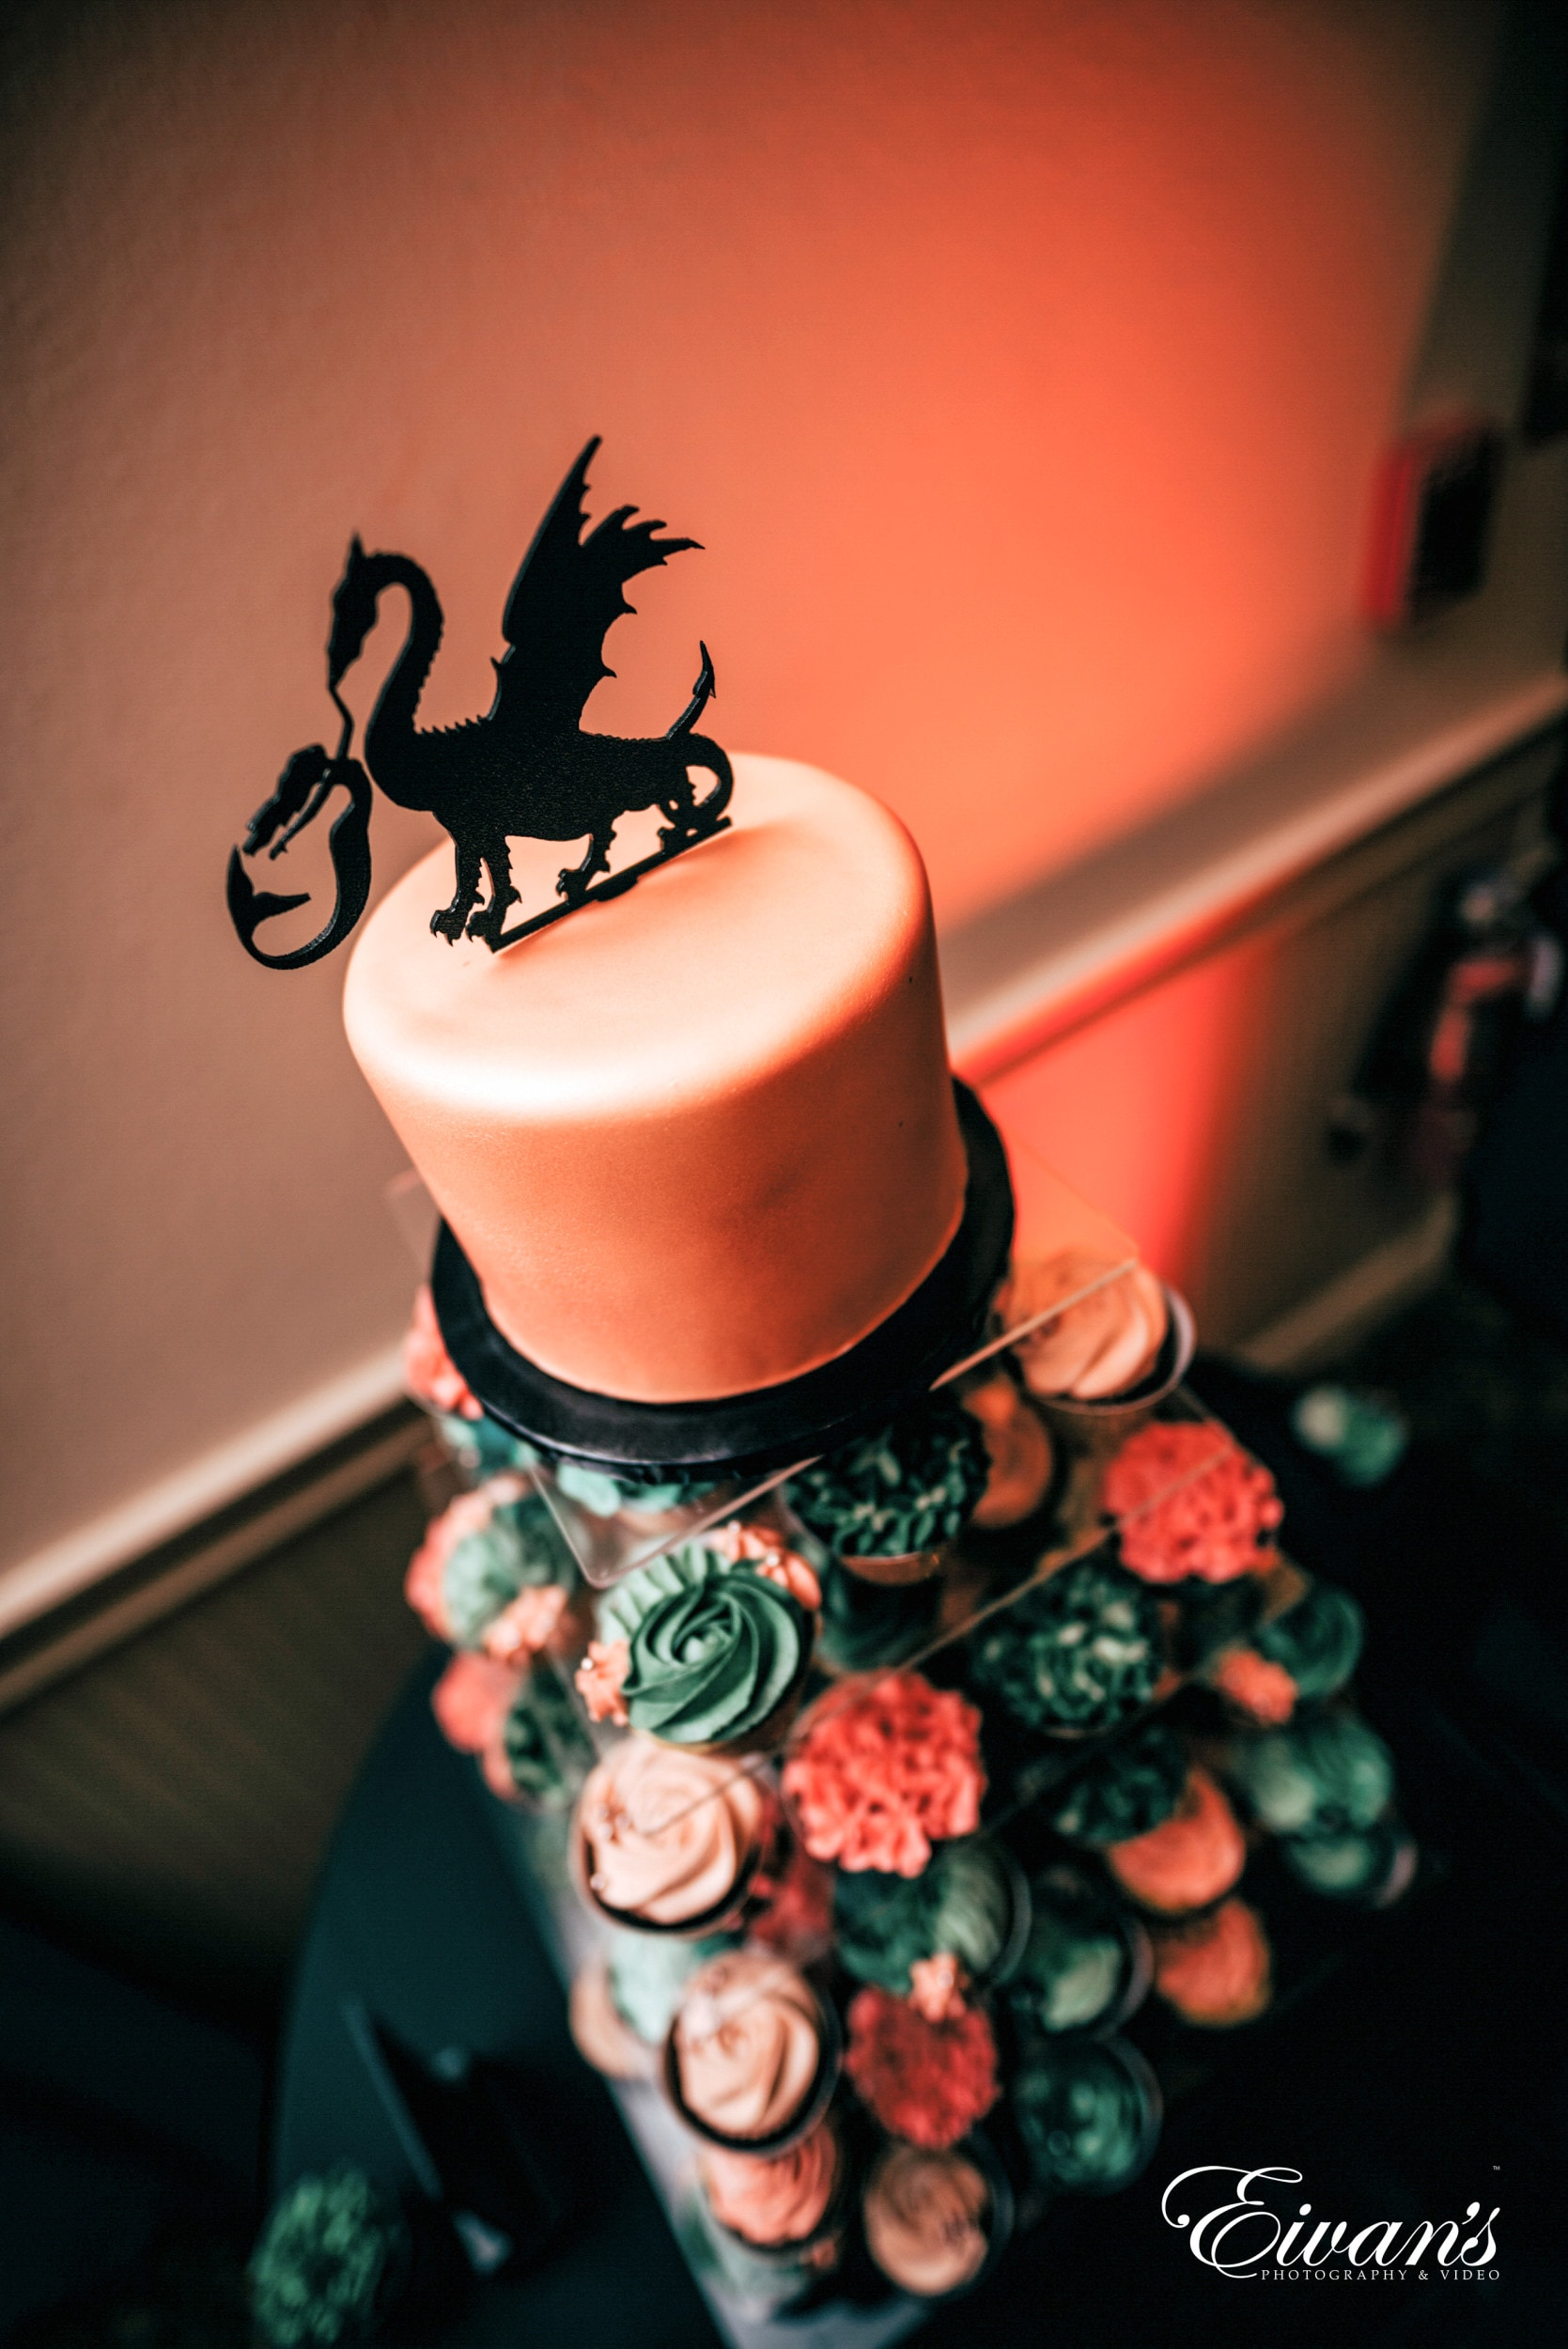 orange wedding cake decorated